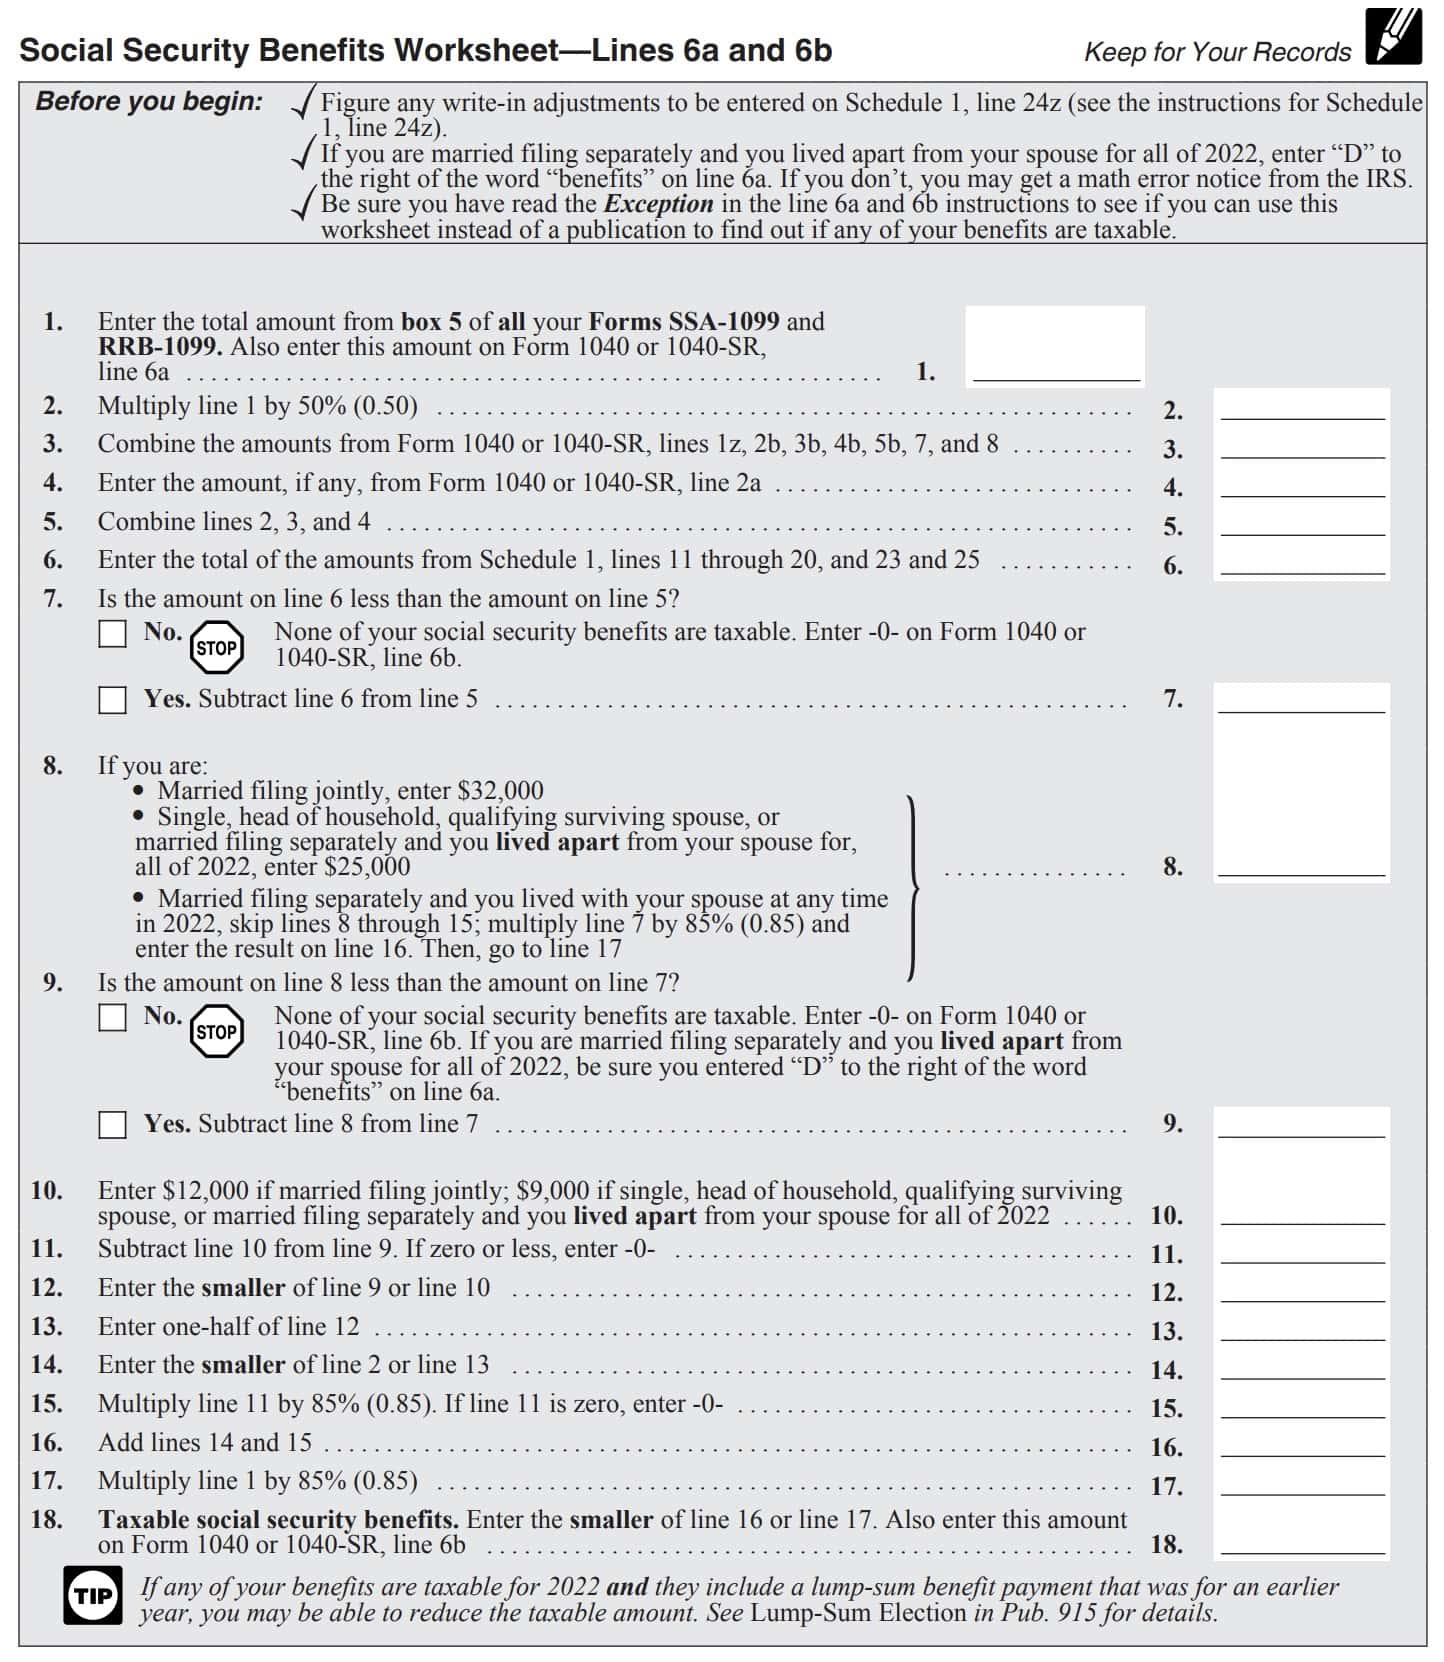 irs form 1040-sr social security benefits worksheet (for line 6b)